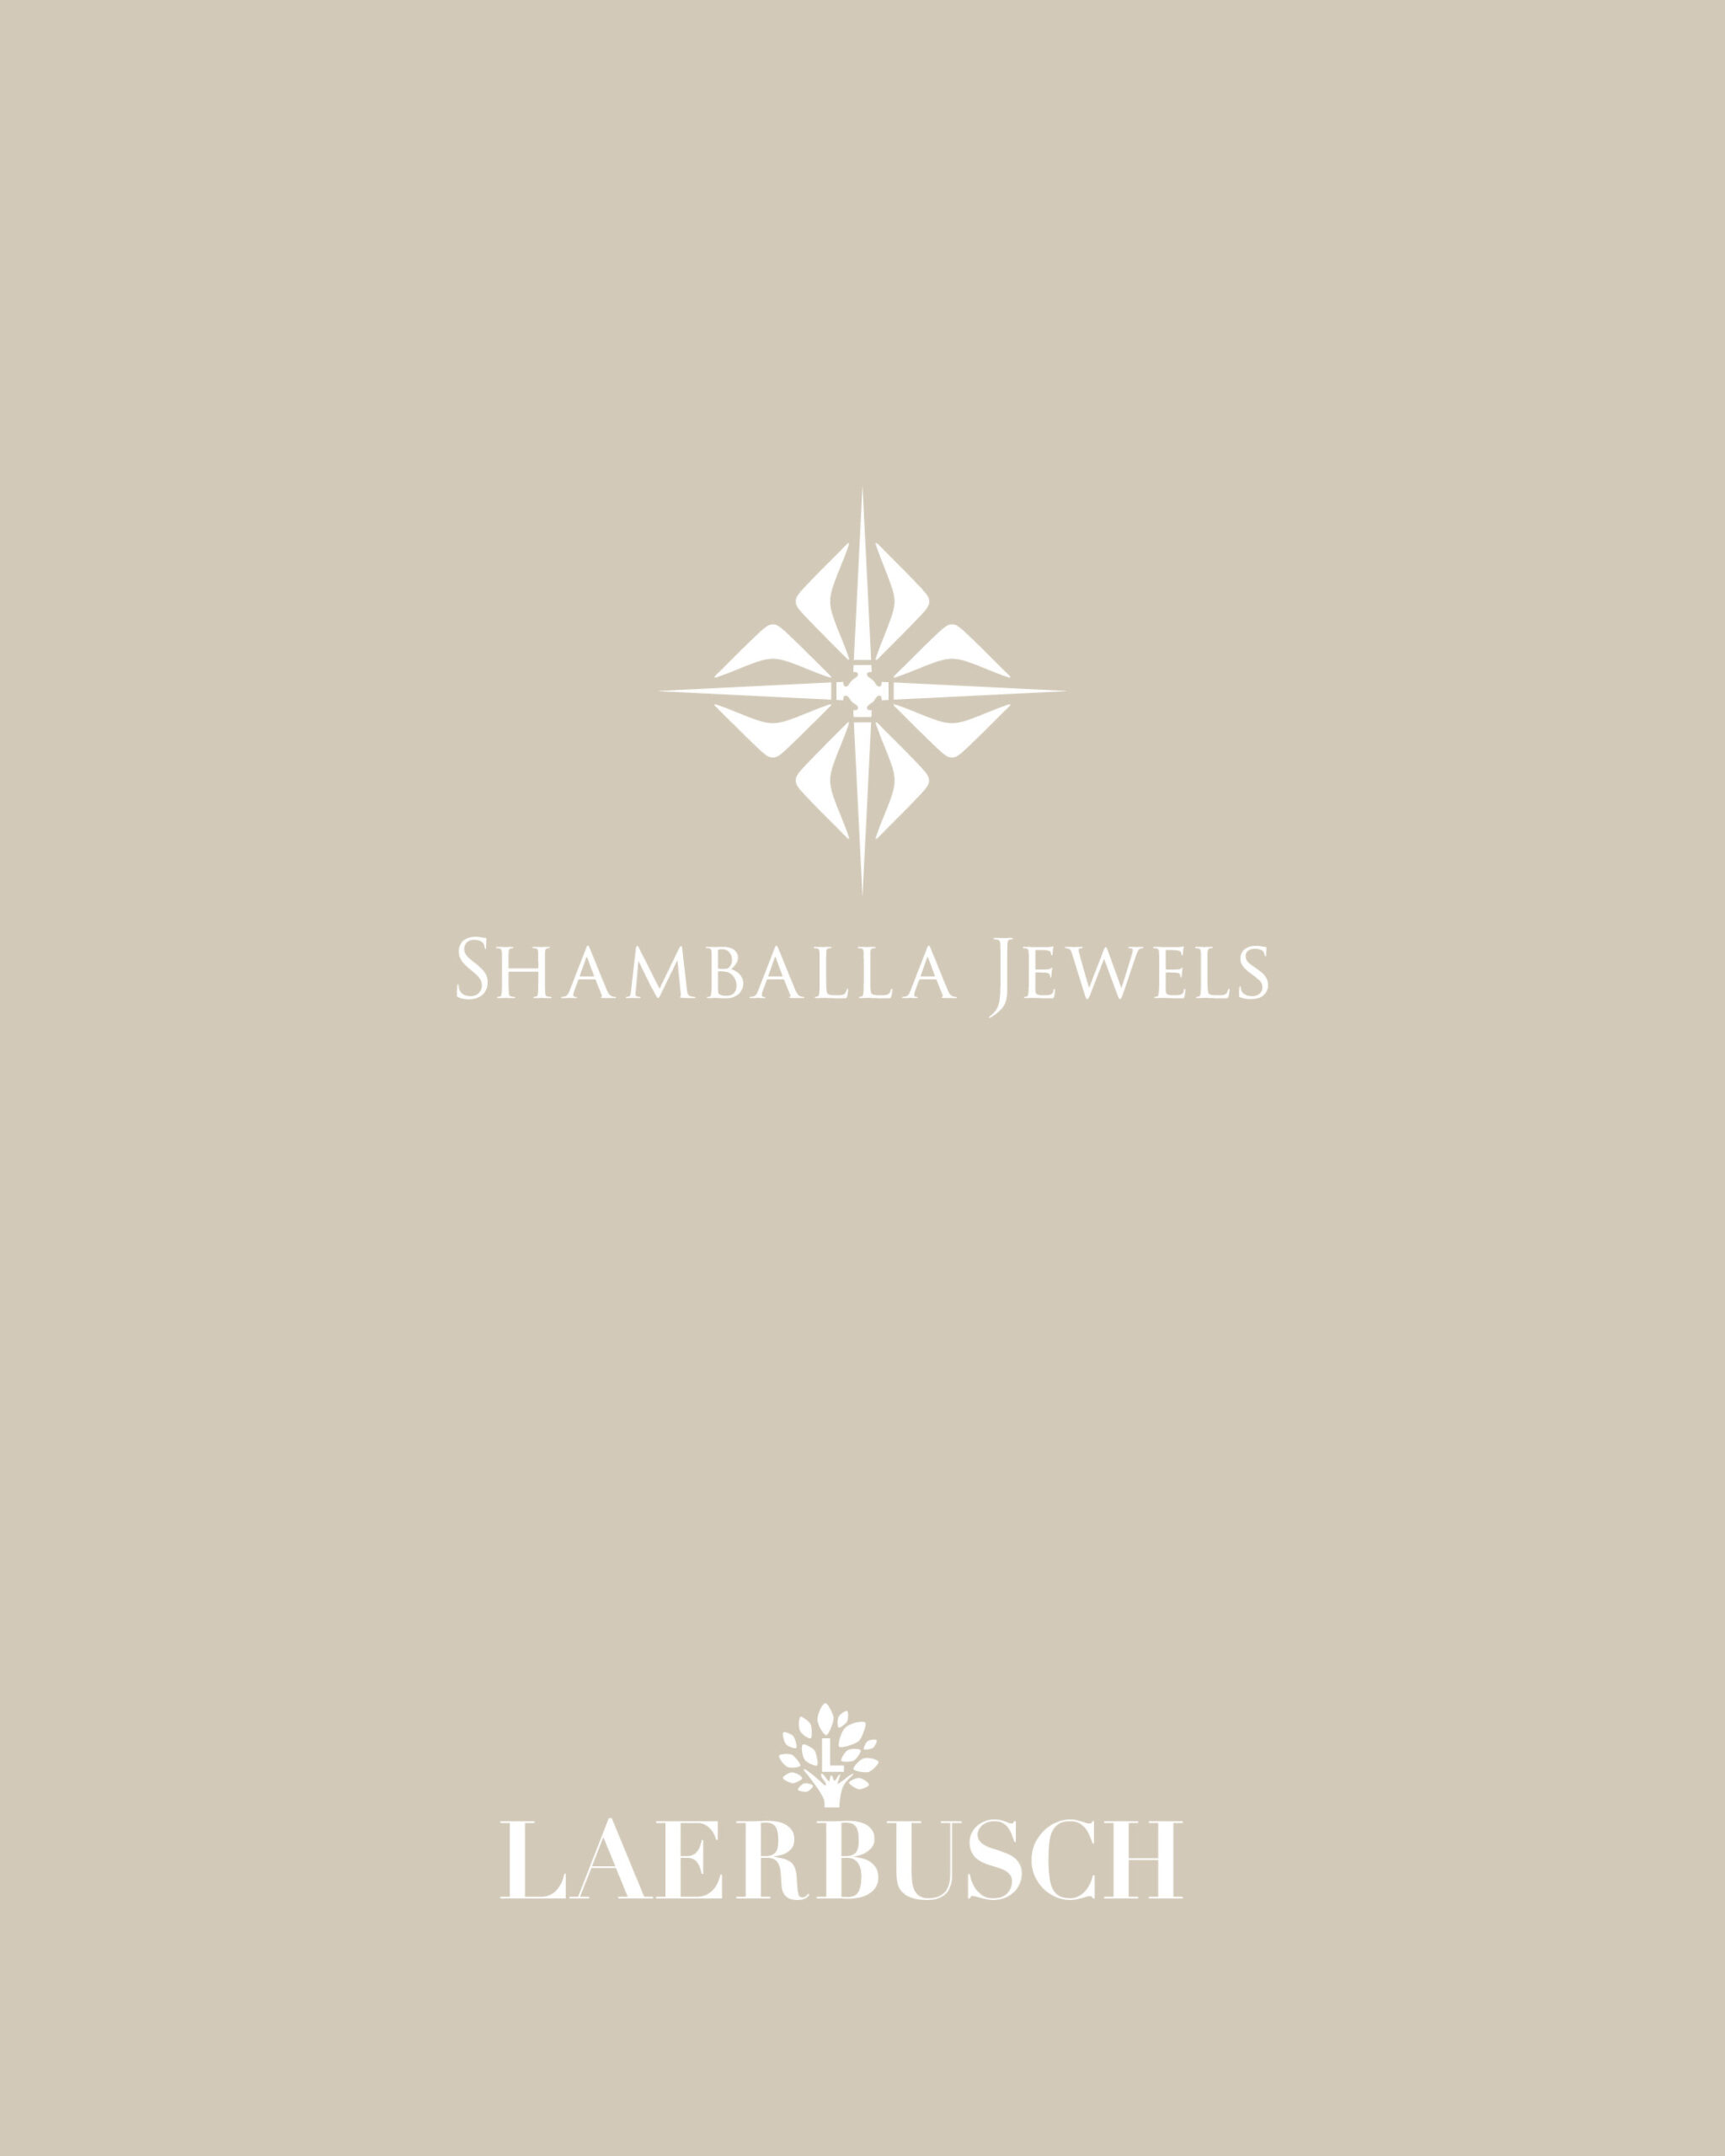 Shamballa bei Juwelier Laerbusch in Mülheim an der Ruhr